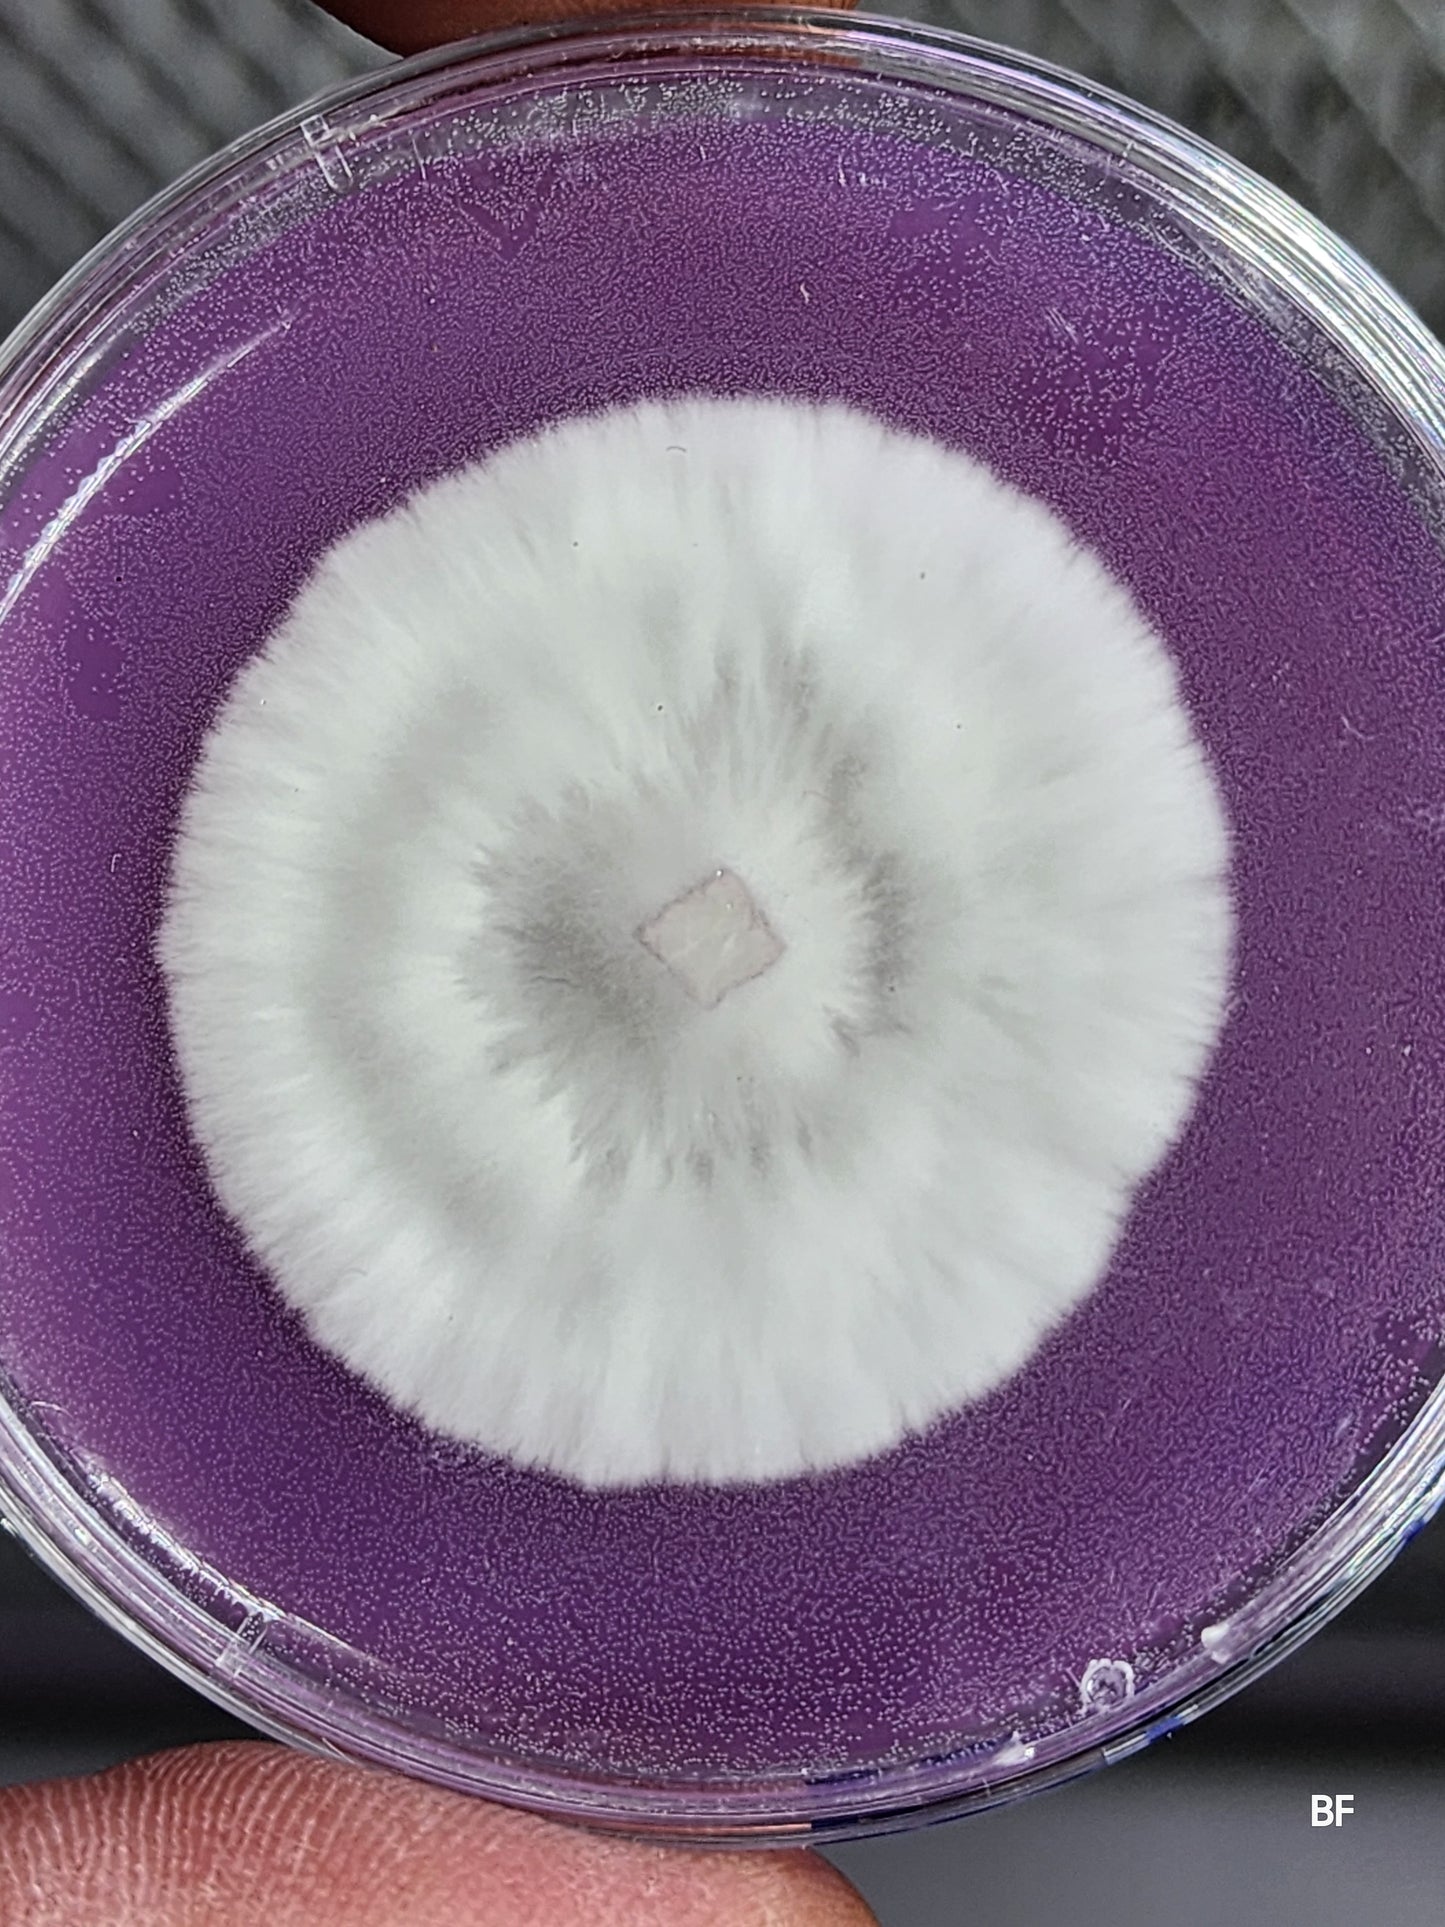 Live Agar Research Culture in 60mm Petri